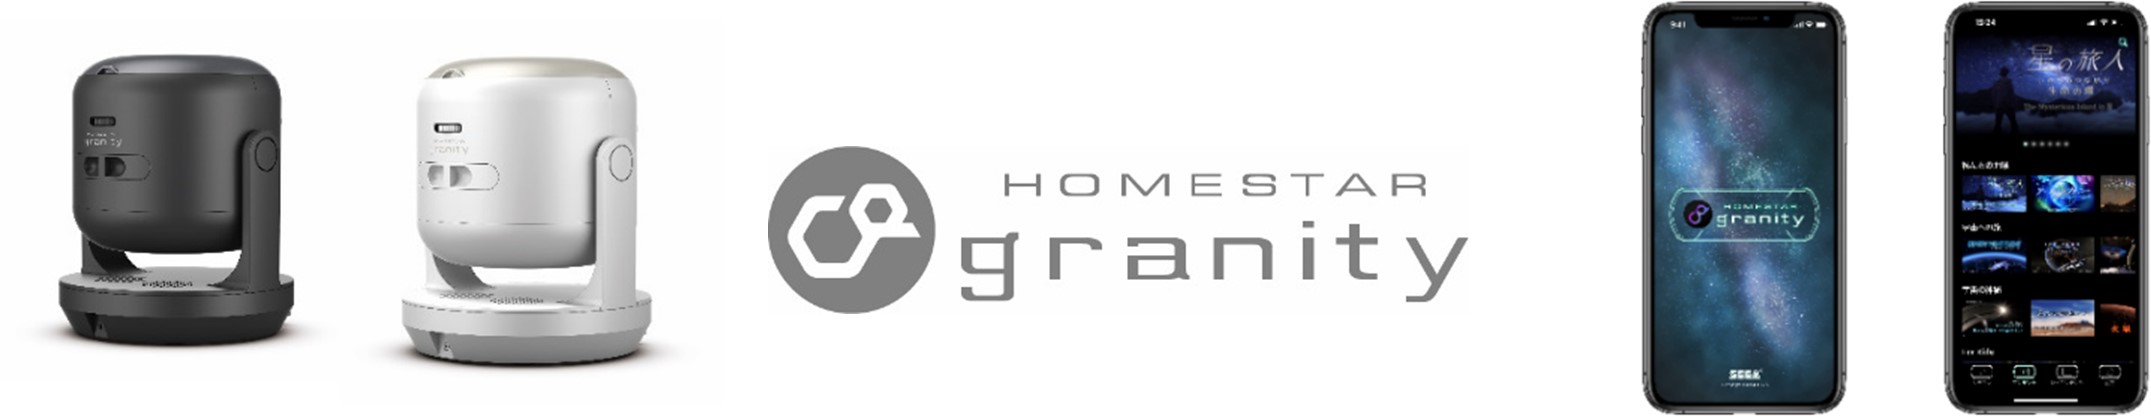 セガトイズ『HOMESTAR granity(ホームスター グラニティ』